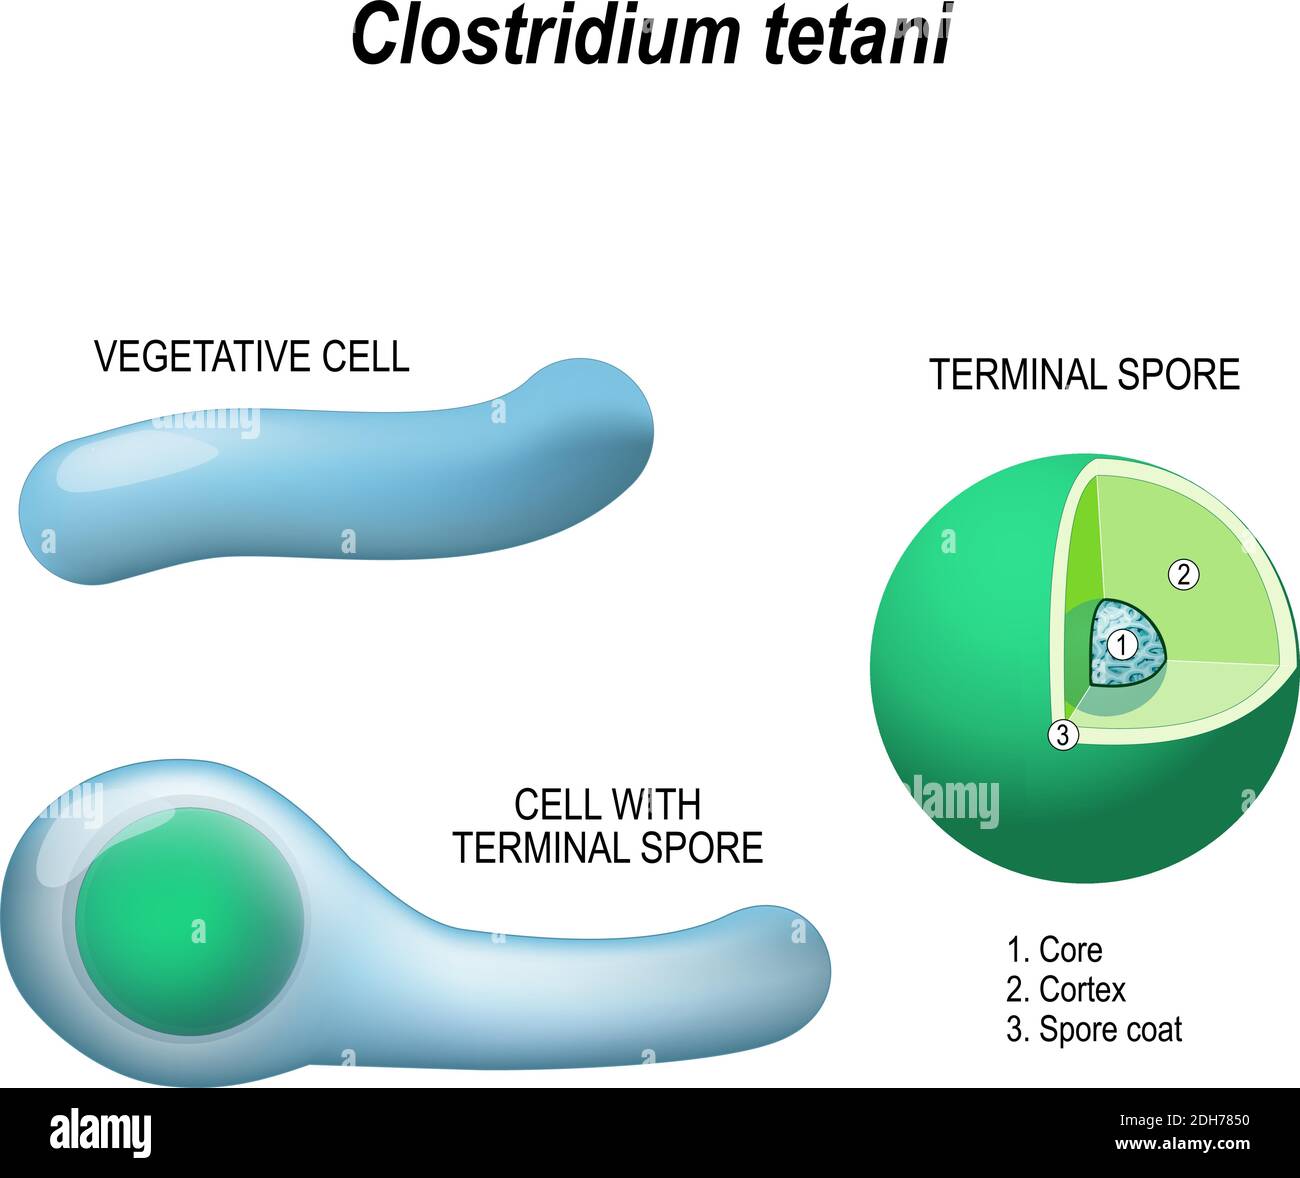 clostridium tetani. Anatomie de la cellule avec la spore terminale et la cellule végétative. Structure de la spore terminale : noyau, cortex et pelage de la spore Illustration de Vecteur